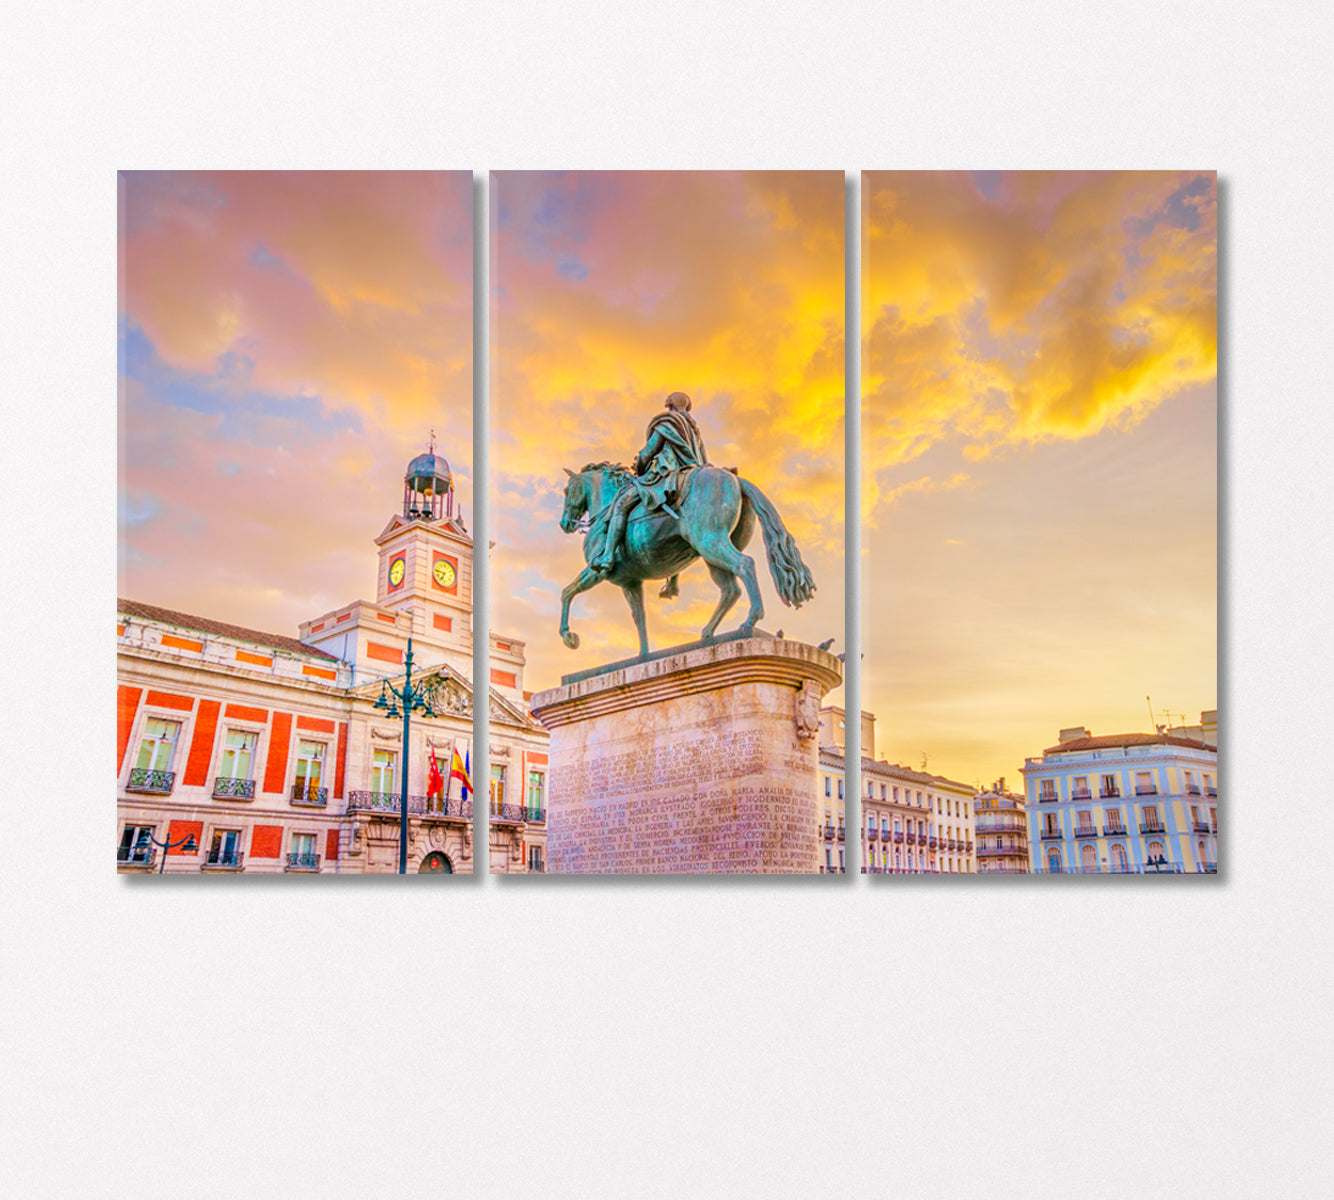 Puerta Del Sol Madrid Spain Canvas Print-Canvas Print-CetArt-3 Panels-36x24 inches-CetArt